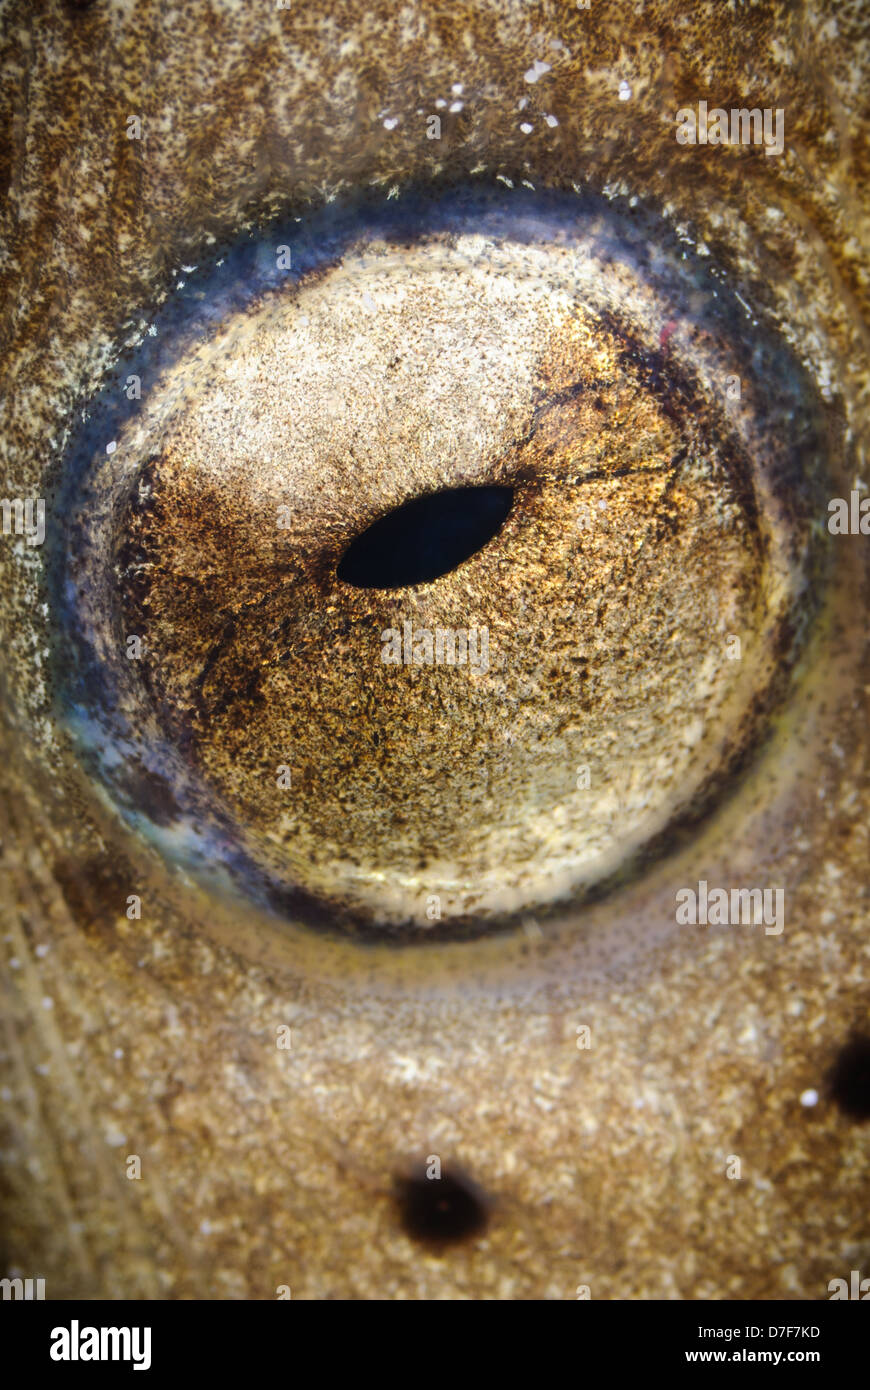 Close up of a snake eel's eye, Mabul, Sabah, Malaysia. Stock Photo